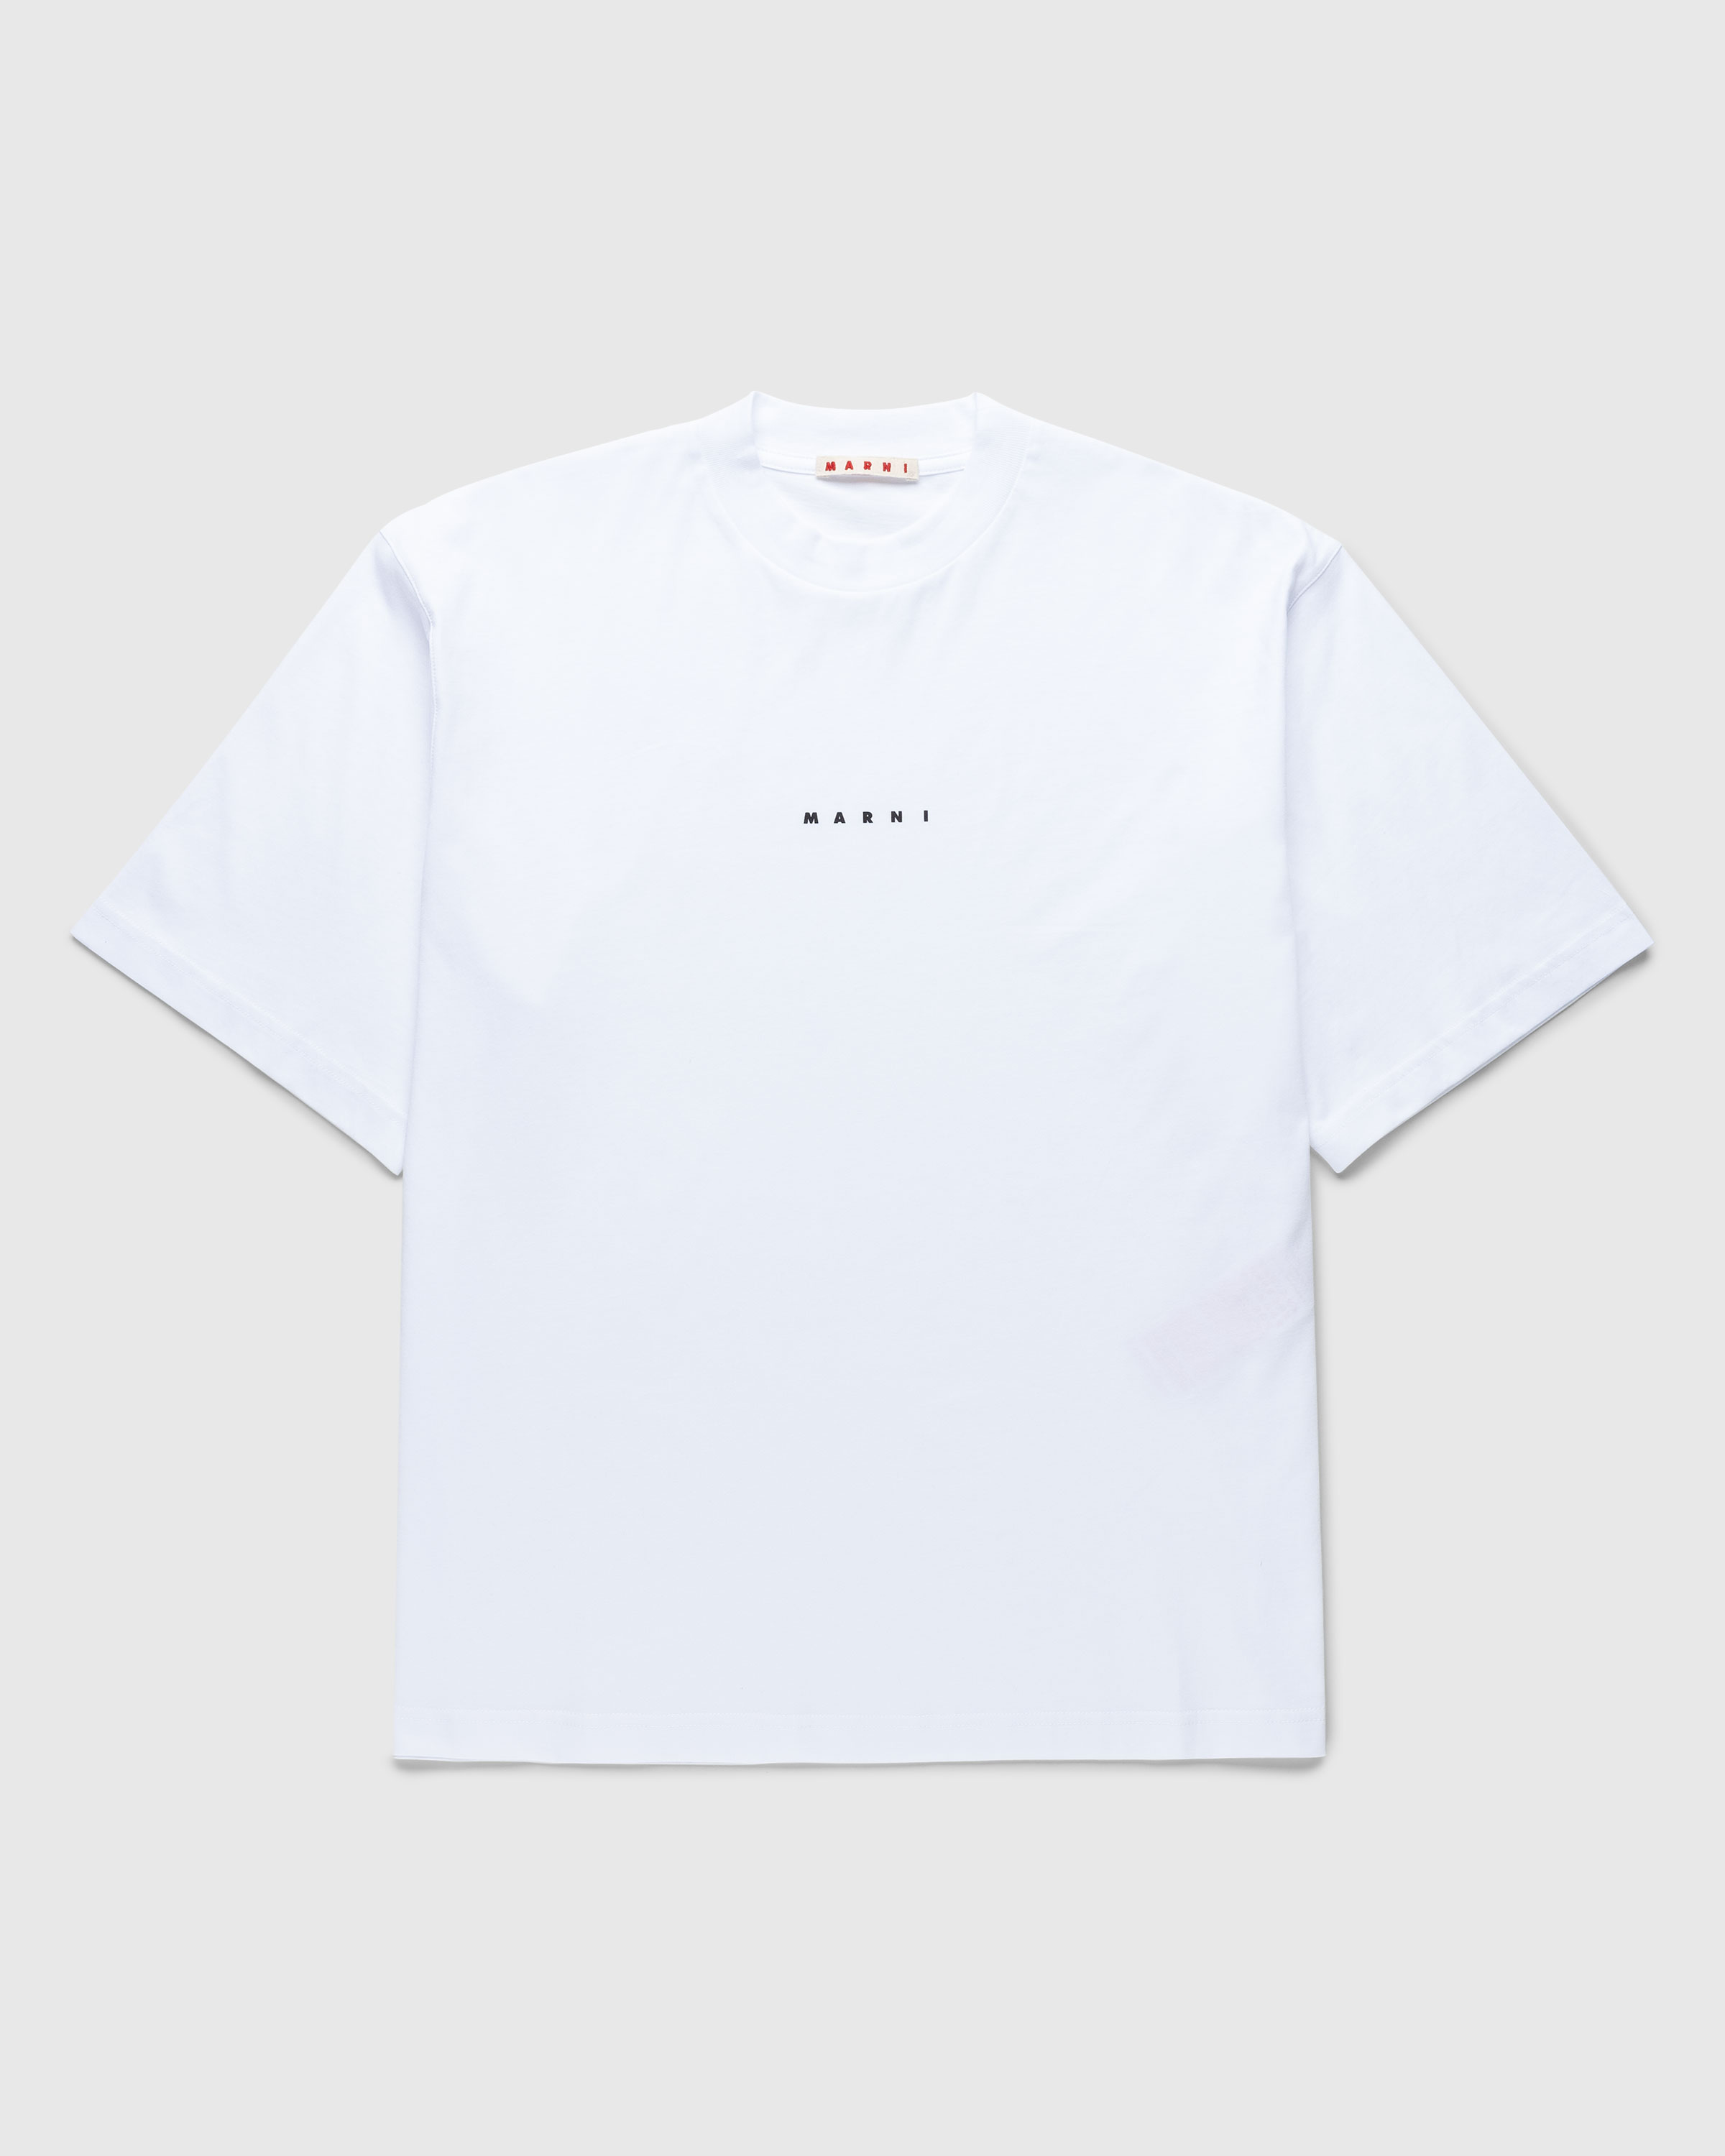 Marni - T-Shirt White - Clothing - White - Image 1